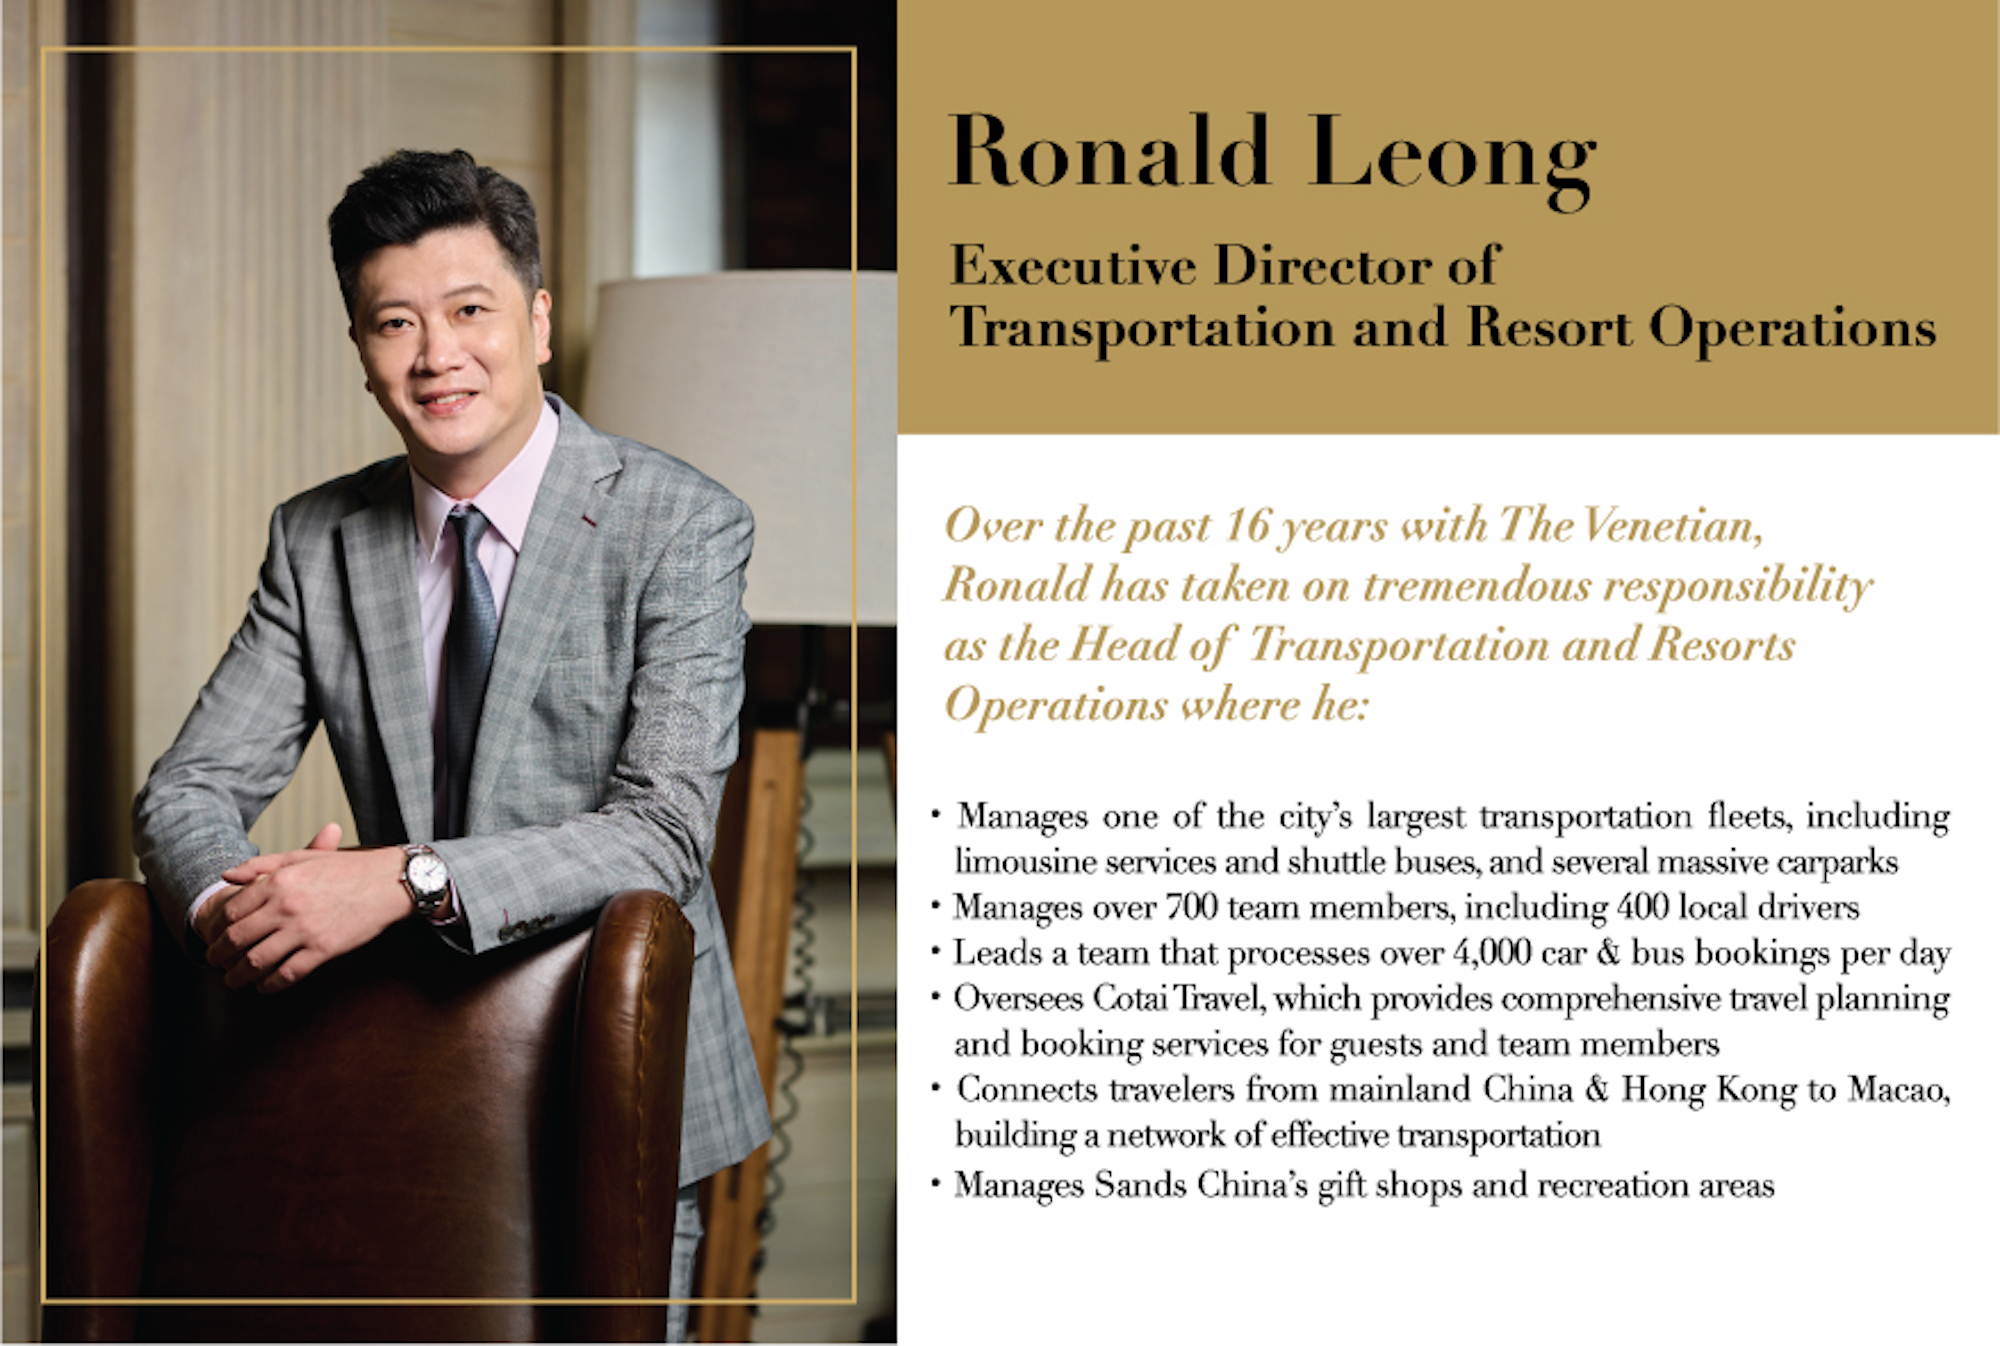 Ronald Leong